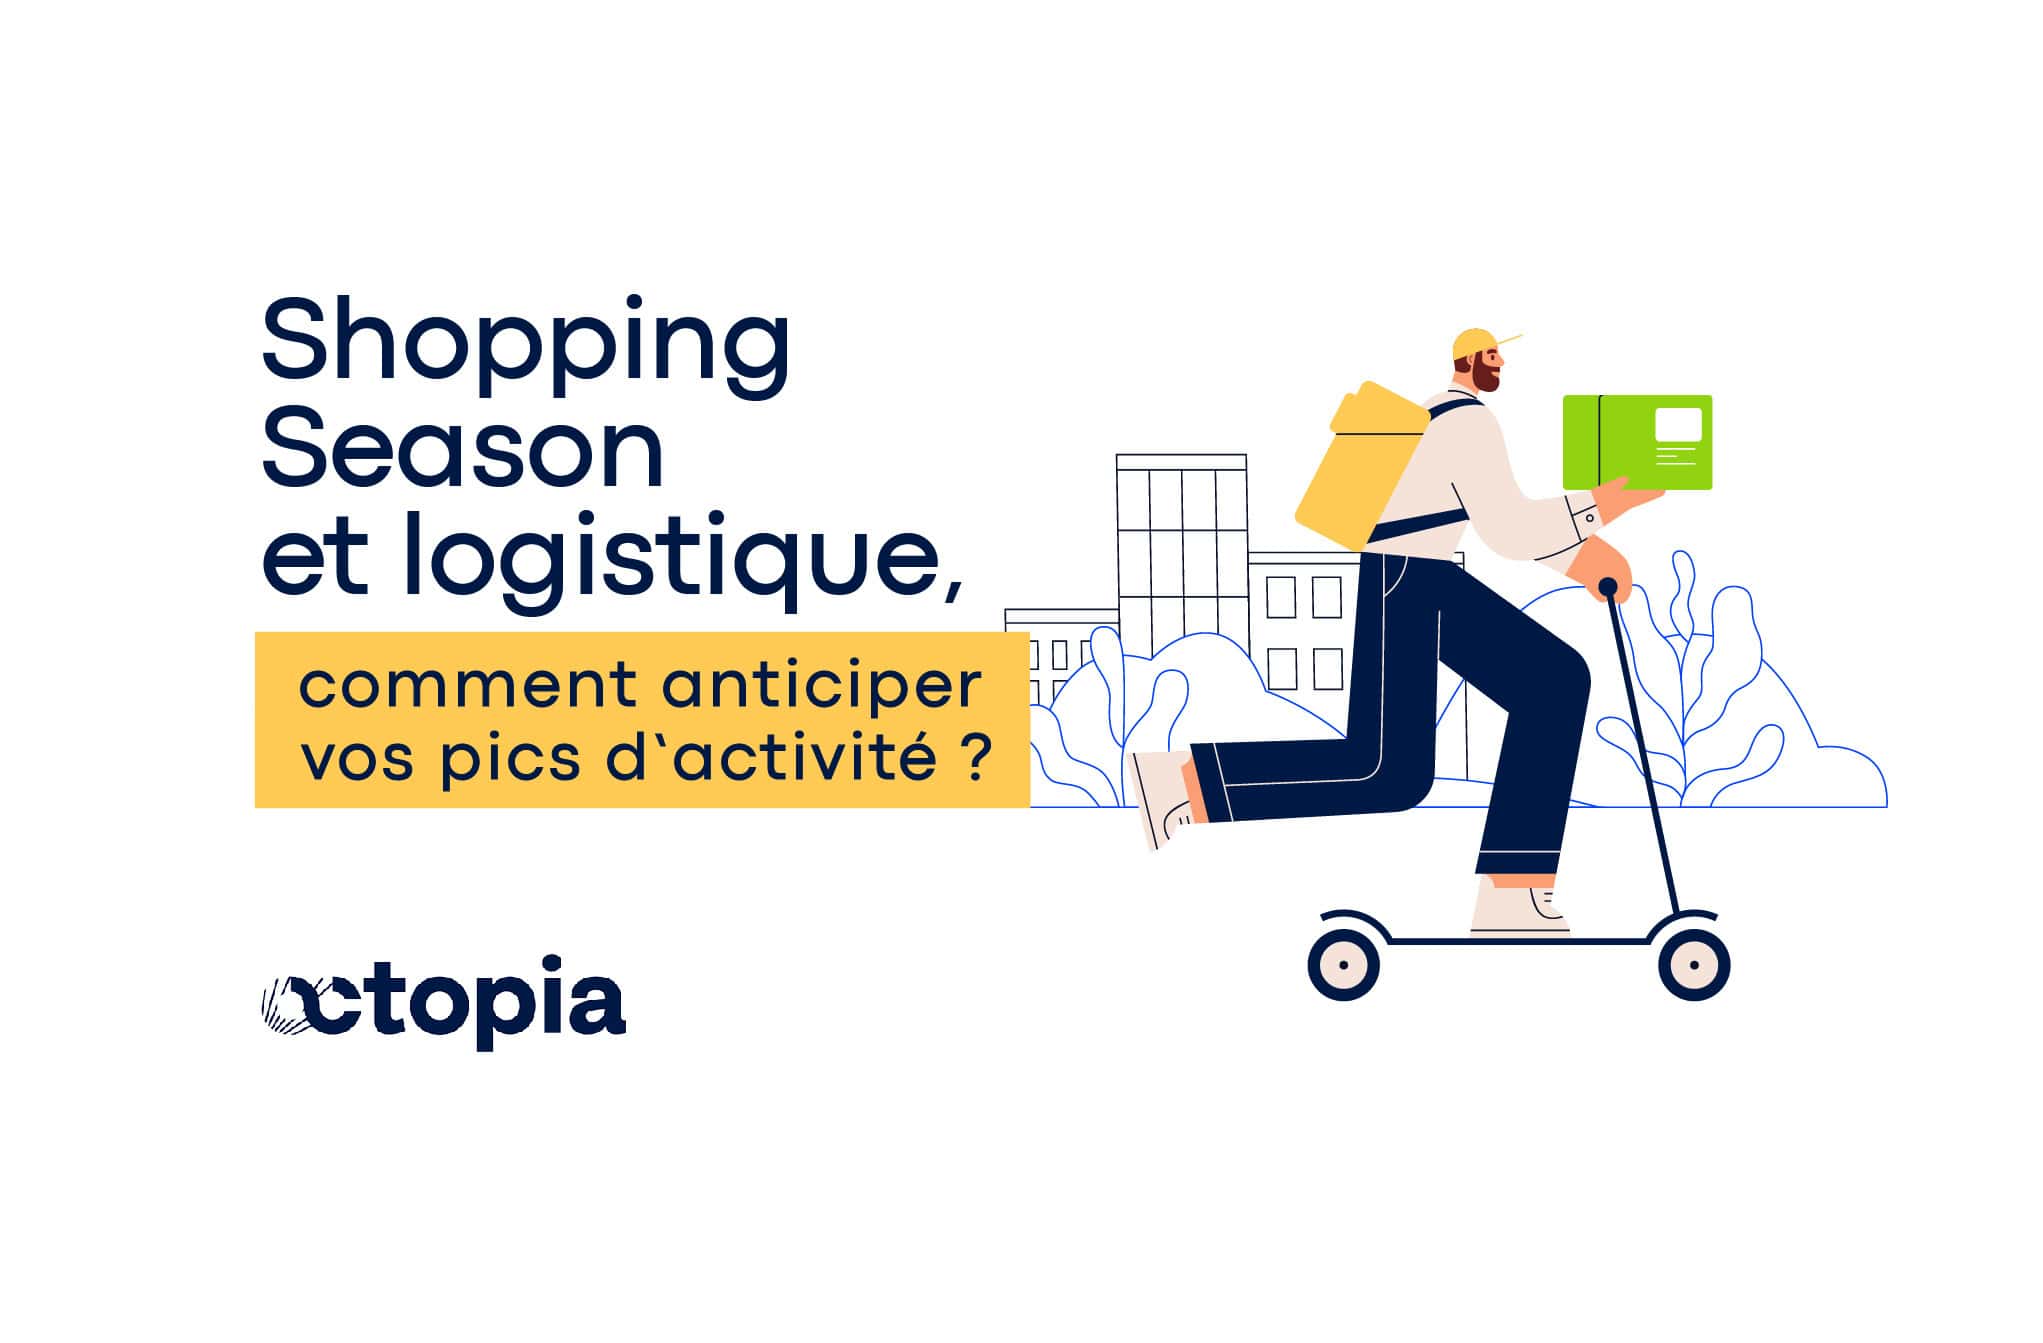 Shopping season et logistique, comment anticiper vos pics d'activité ?